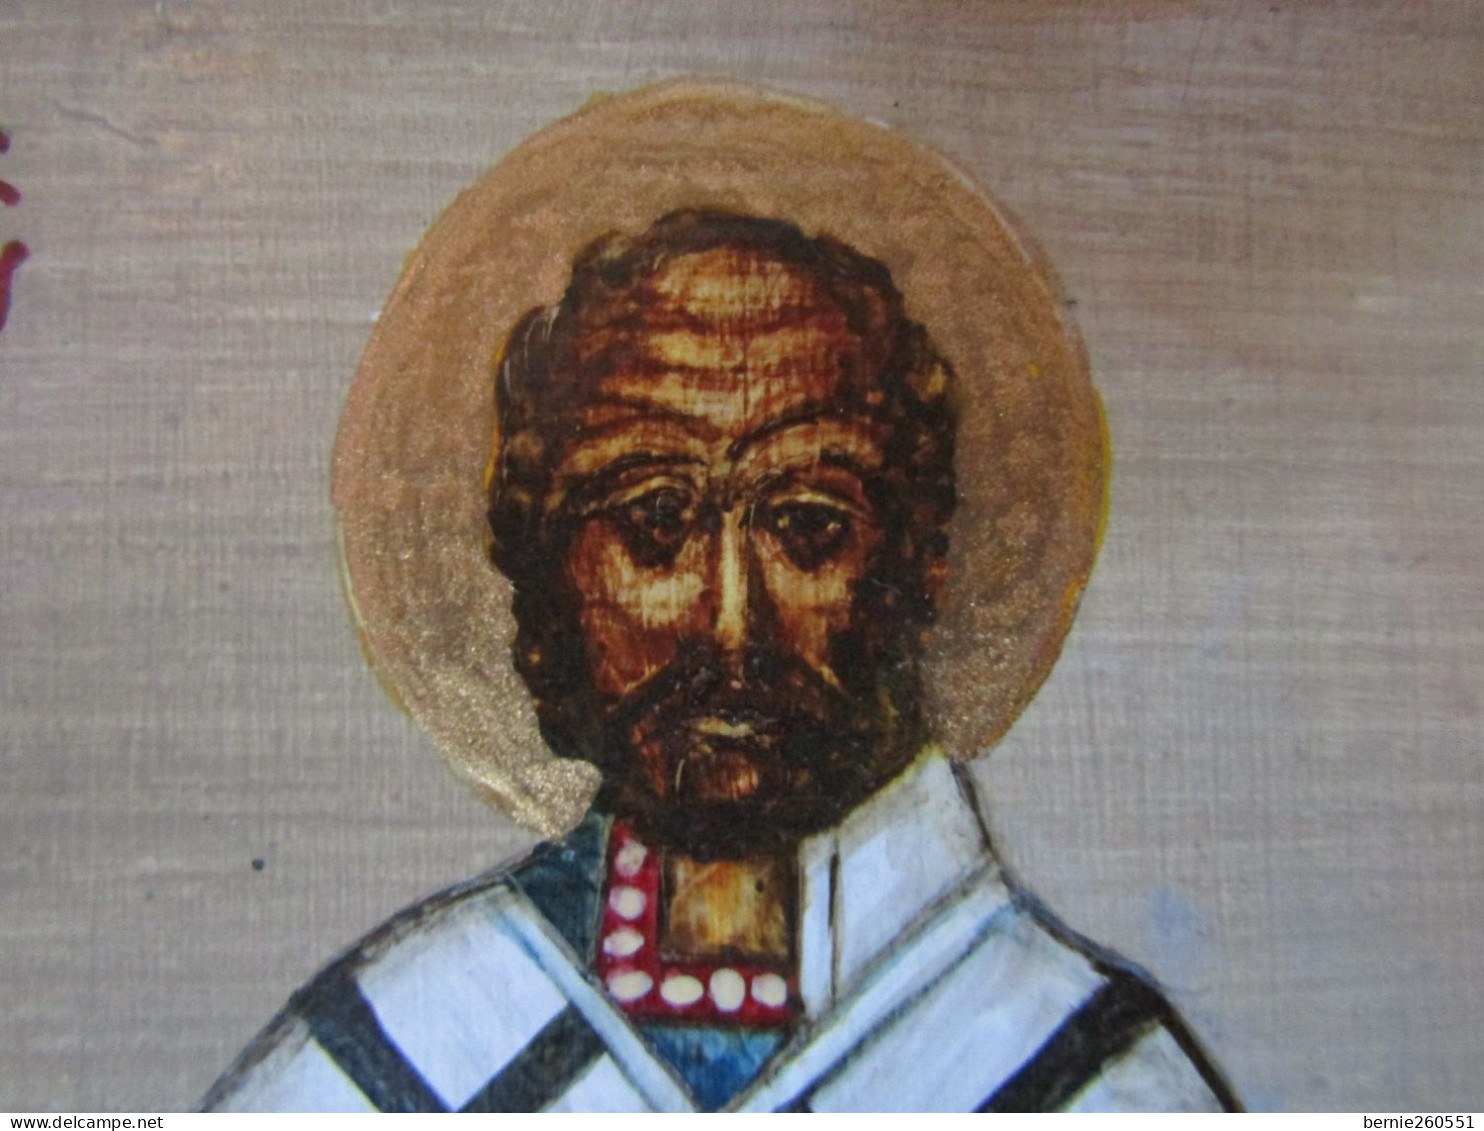 Ancienne et véritable icône Russe de Saint Nicholas